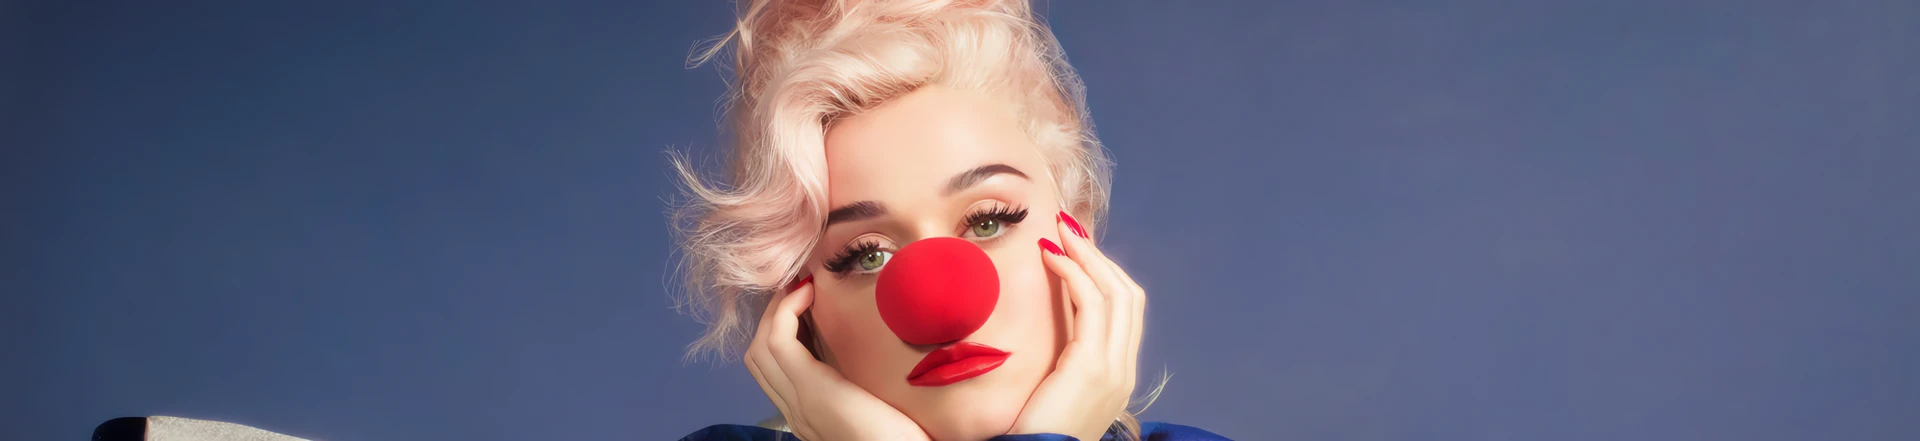 Katy Perry ogłasza szczegóły nowej płyty